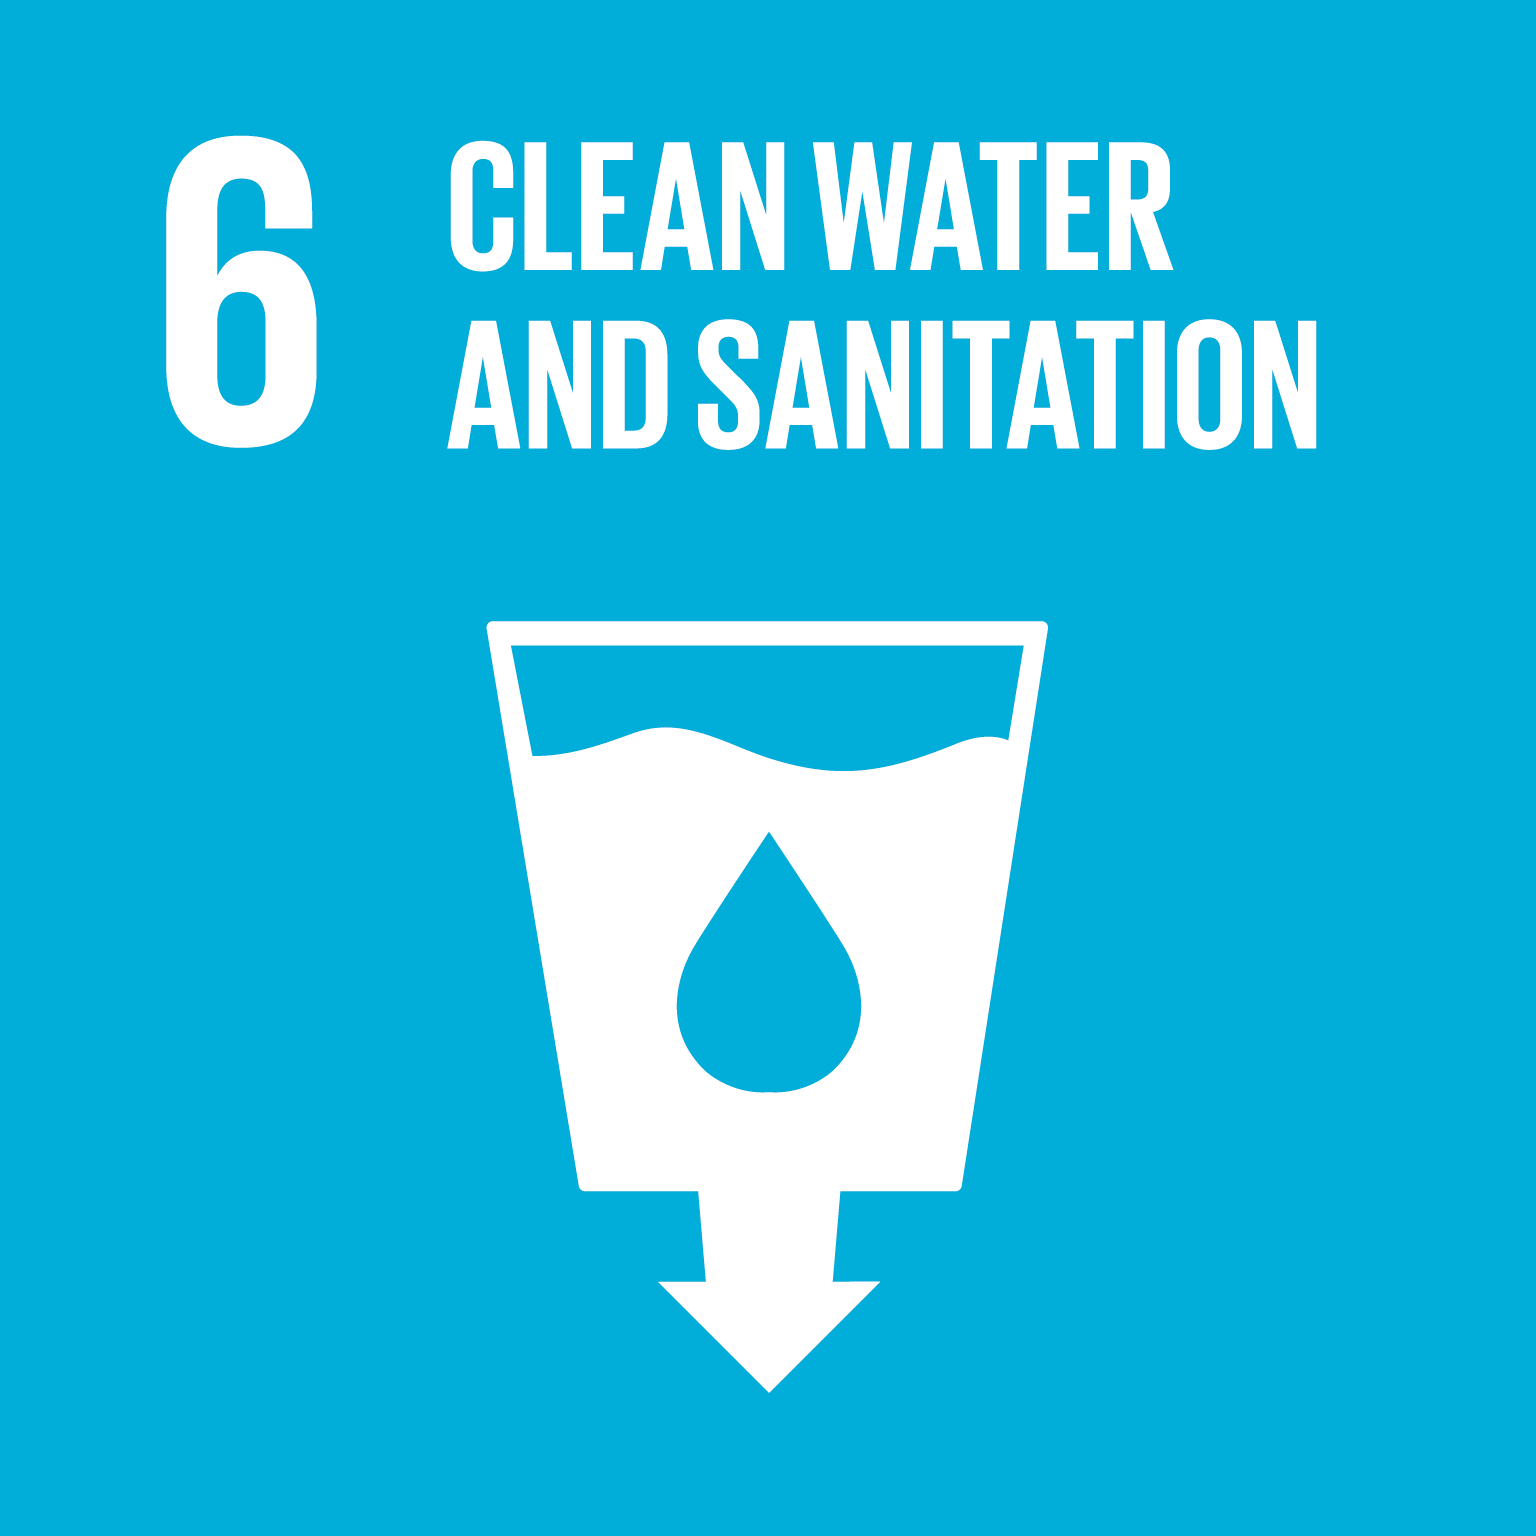 К 2030 году ООН стремится улучшить качество воды путем, например, минимизации выбросов опасных химических веществ, сокращения вдвое доли неочищенных сточных вод, выбрасываемых в природу, и существенного увеличения рециркуляции и повторного использования воды по всему миру